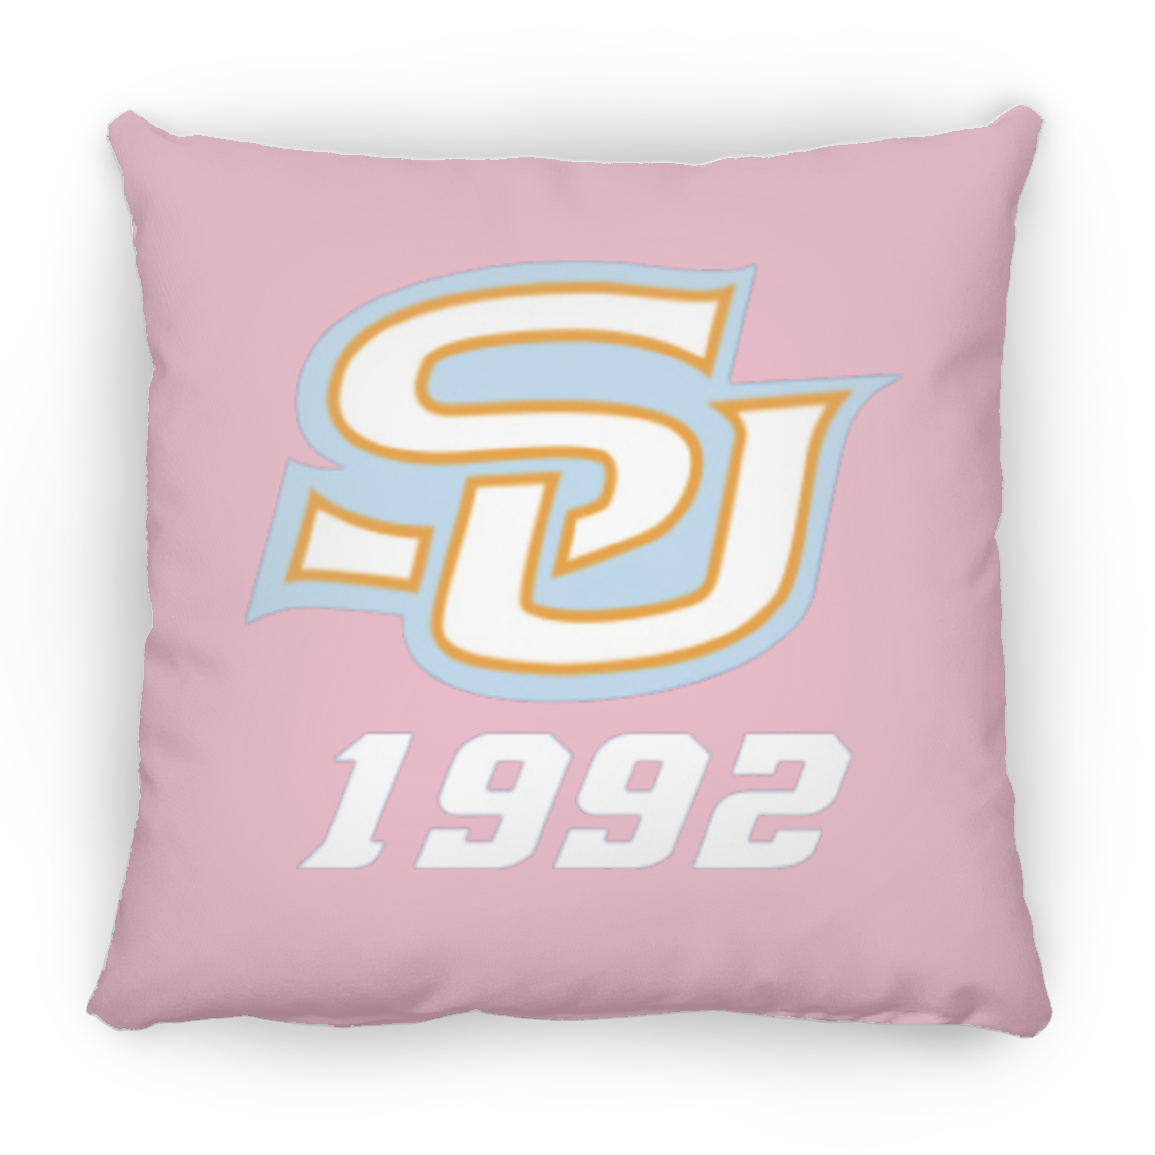 SU 1992 ZP14 Small Square Pillow